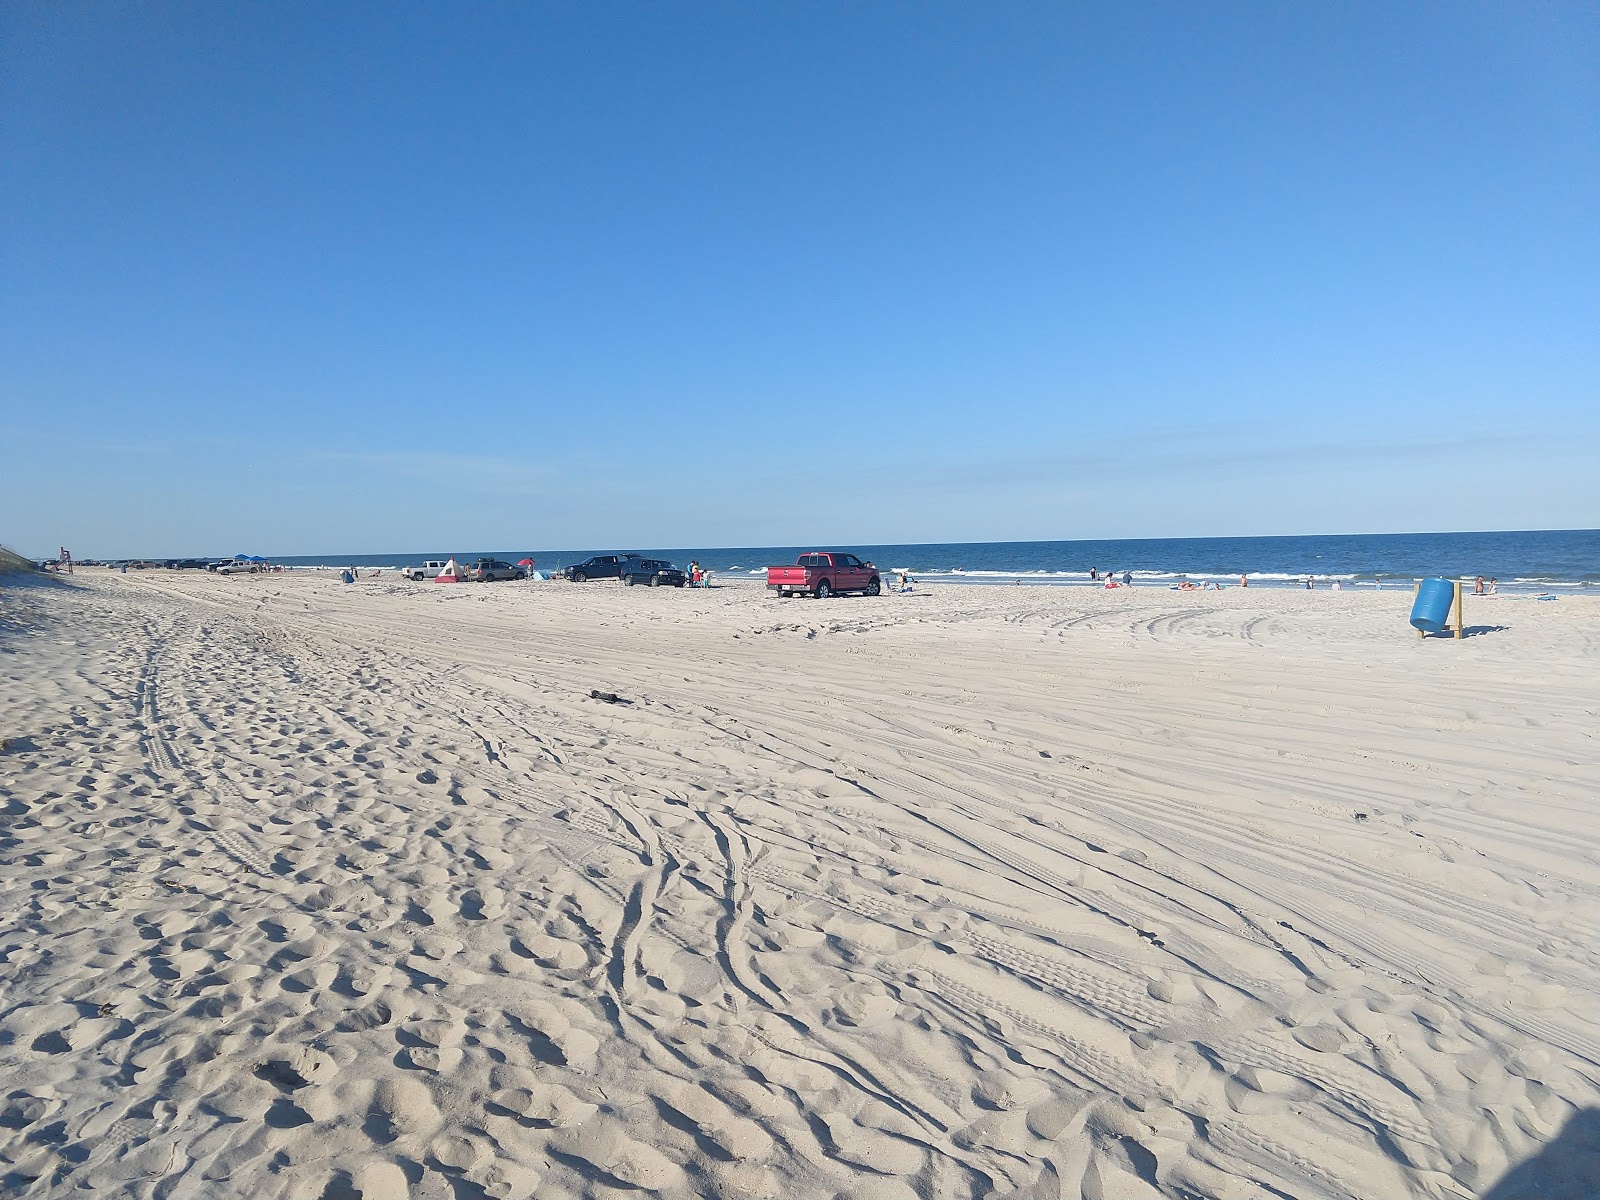 Foto de Peters Point beach - lugar popular entre os apreciadores de relaxamento